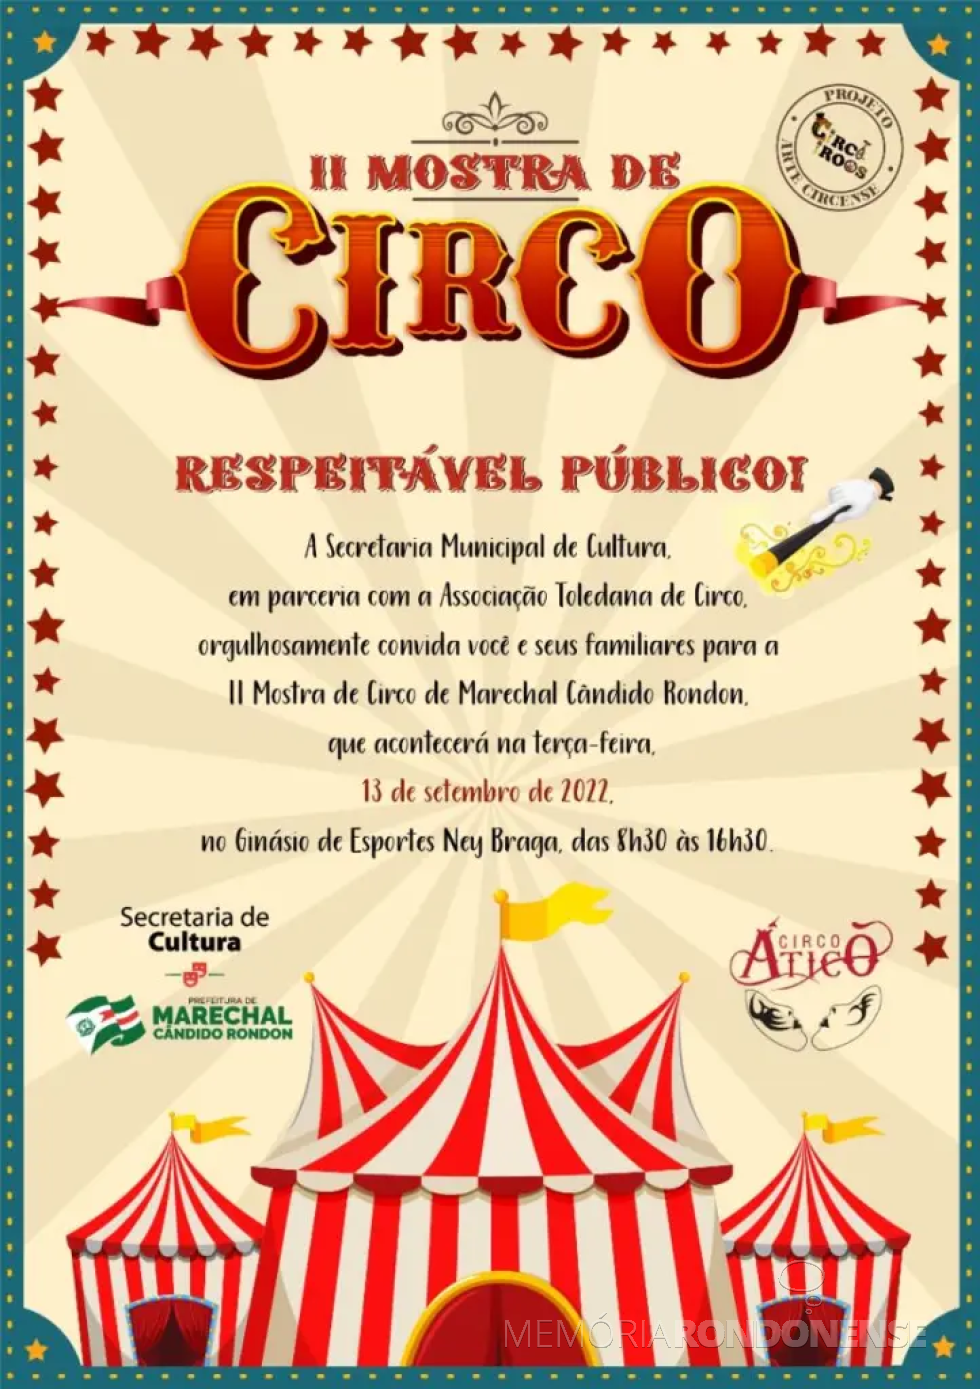 || Cartaz-convite para a II Mostra de Circo de Marechal Cândido Ropndon, em setembro de 2022.
Imagem: Acervo O Presente - FOTO 15 - 